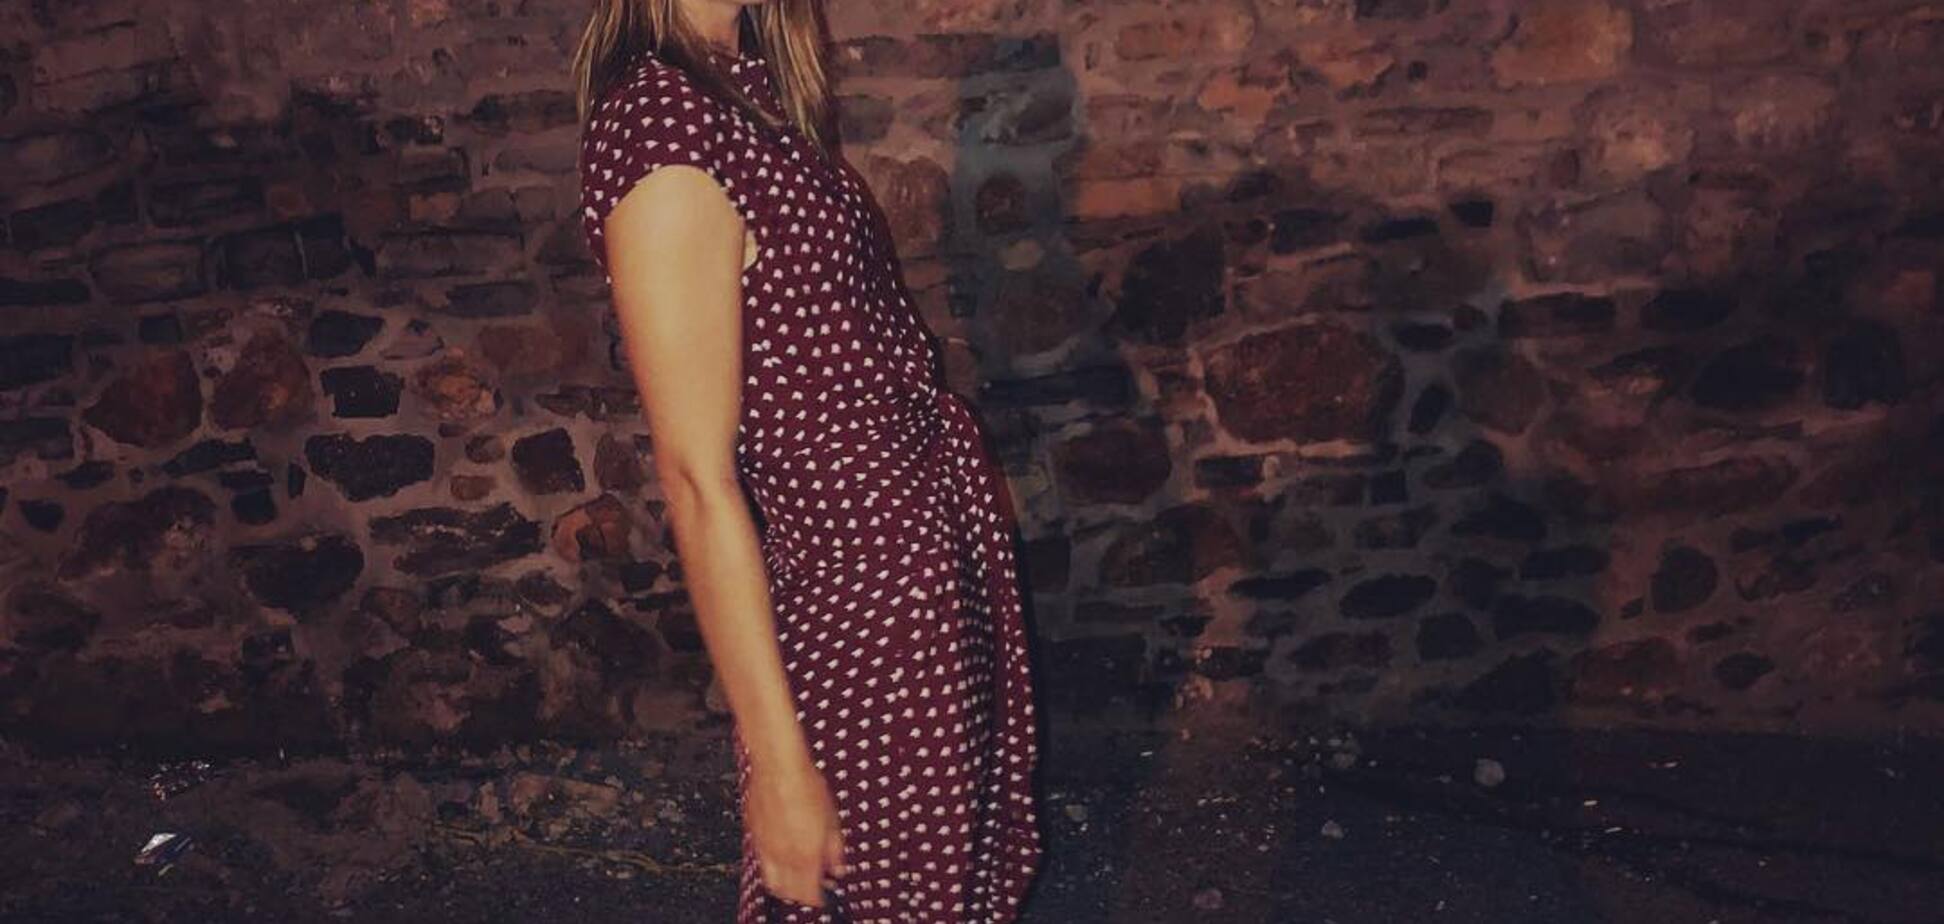 П'яна або вагітна? Шарапова викликала переполох в Instagram провокаційним фото